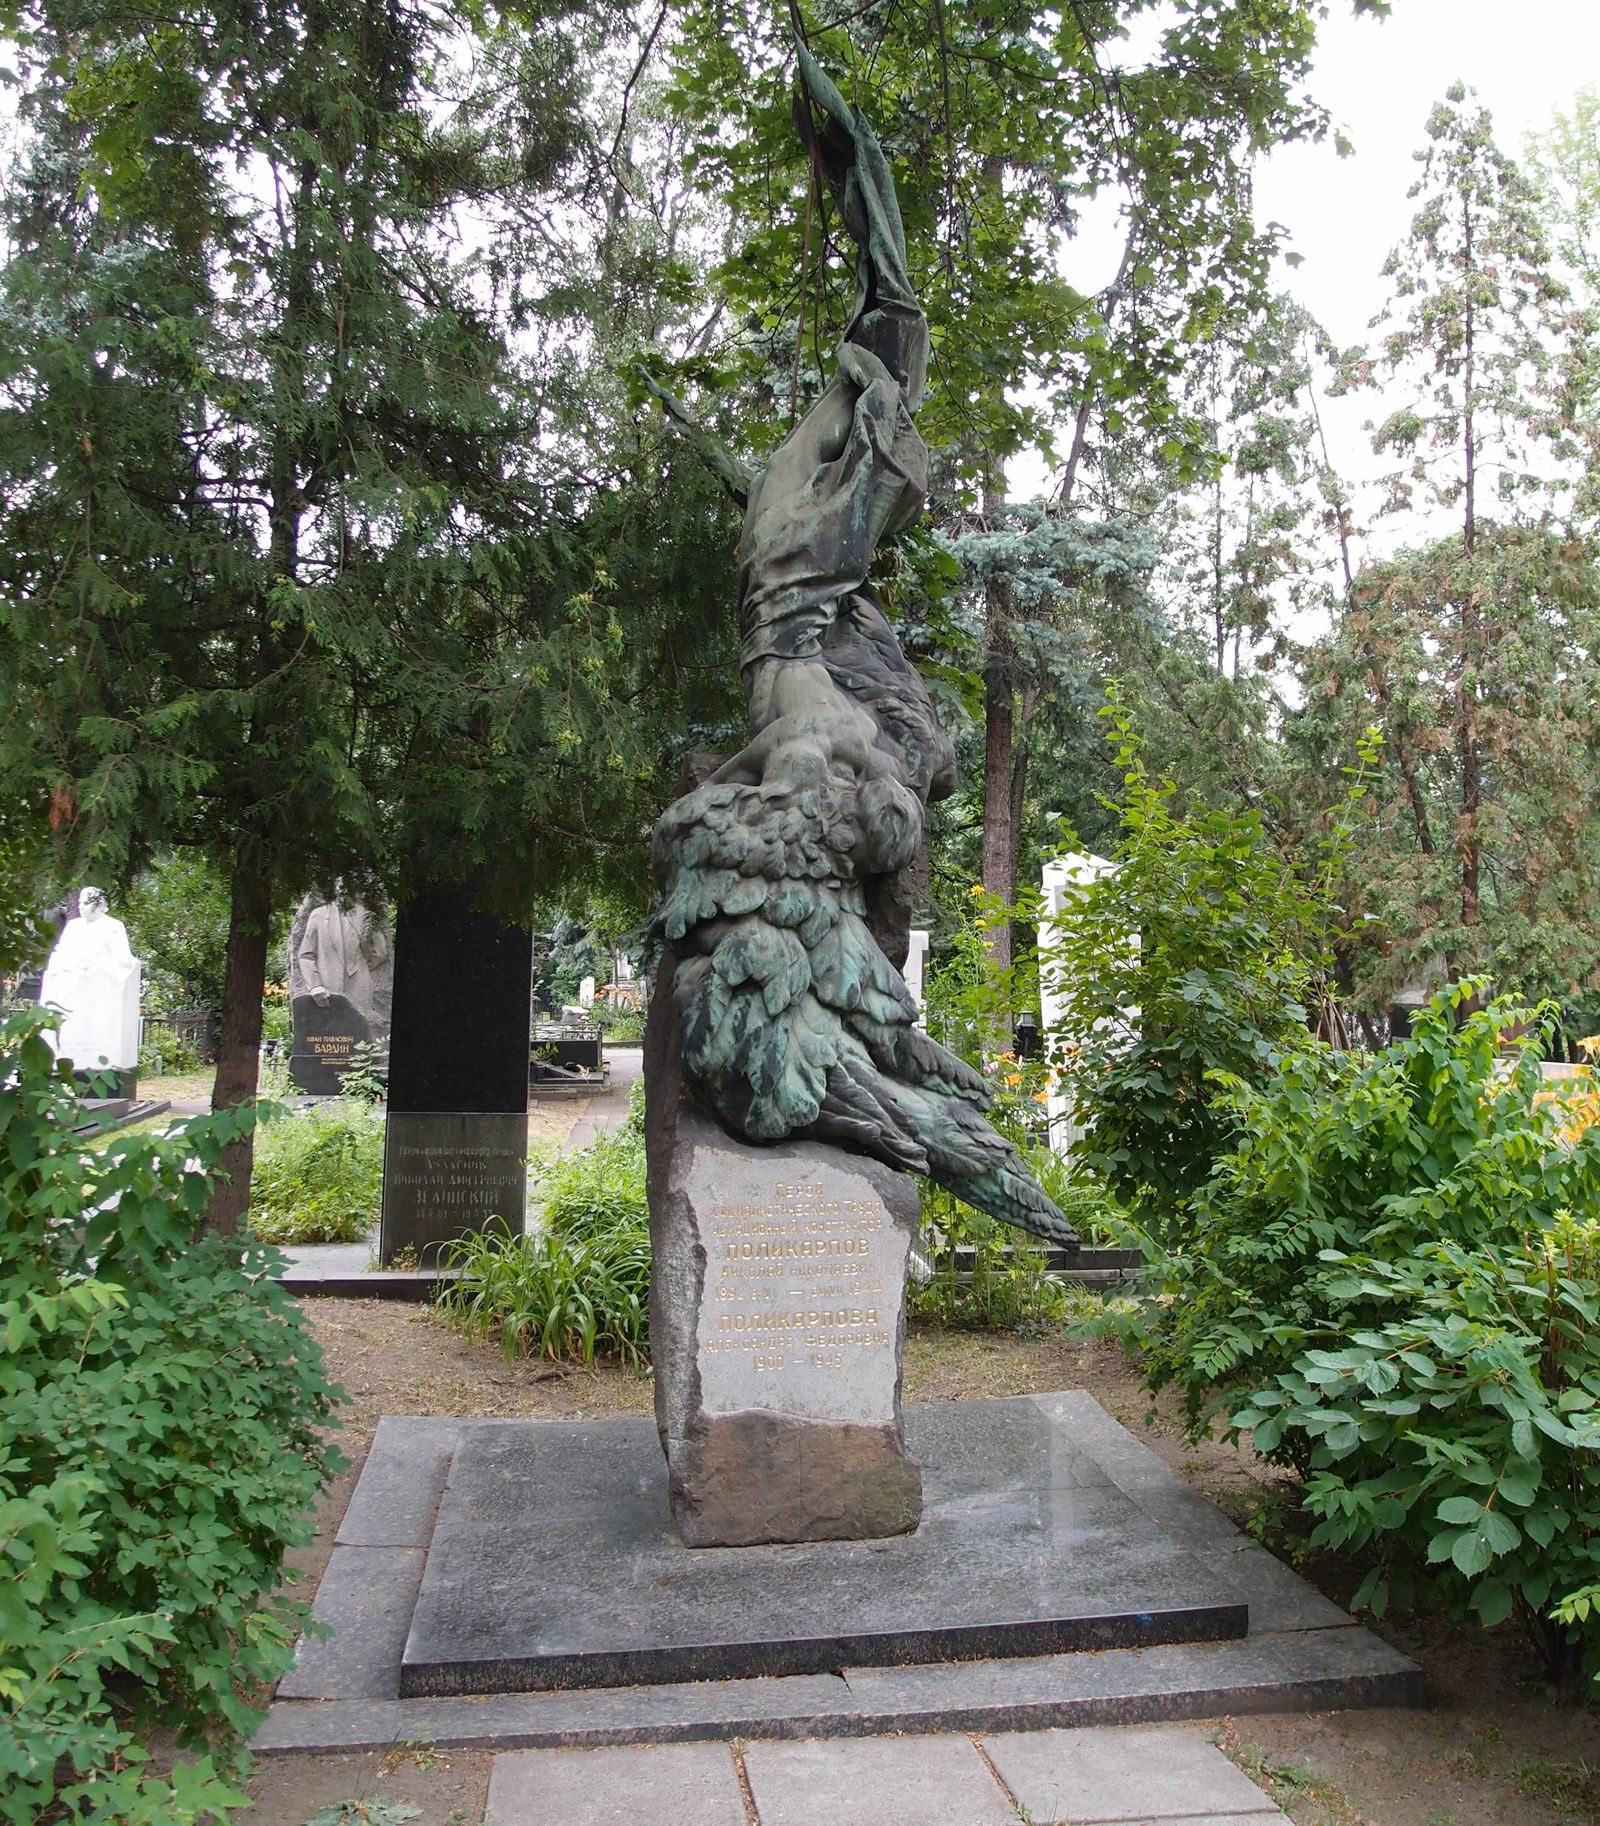 Памятник на могиле Поликарпова Н.Н. (1892-1944), ск. С.Меркуров, композиция «Икар», на Новодевичьем кладбище (1-43-17). Нажмите левую кнопку мыши, чтобы увидеть фрагменты памятника крупно.